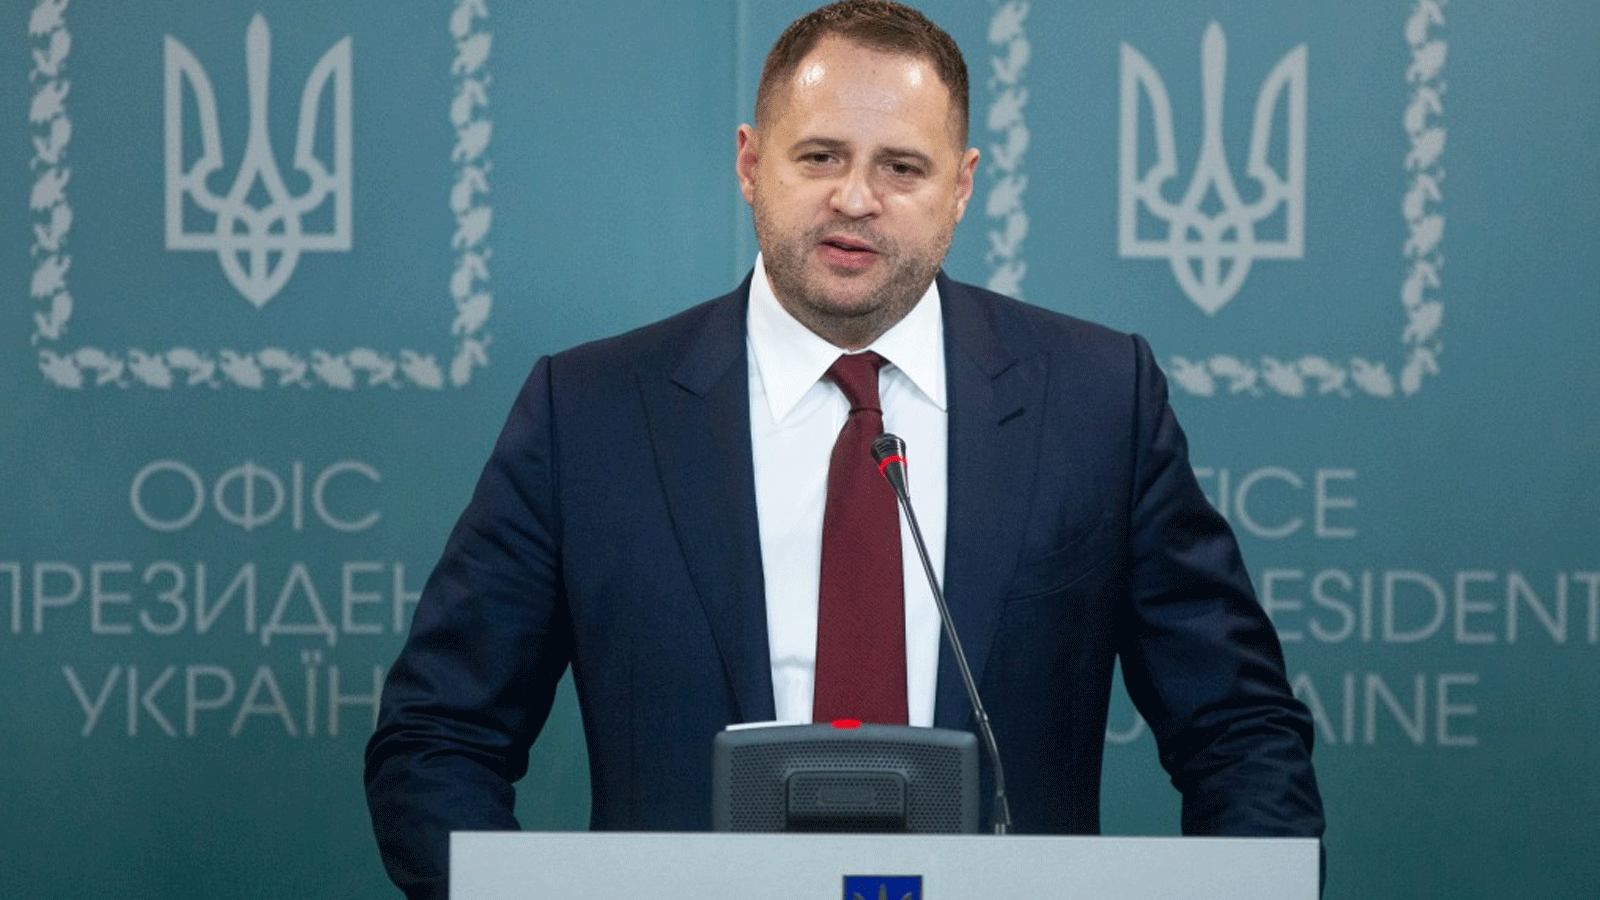 اندريه يرماك رئيس إدارة الرئيس الأوكراني فولوديمير زيلينسكي